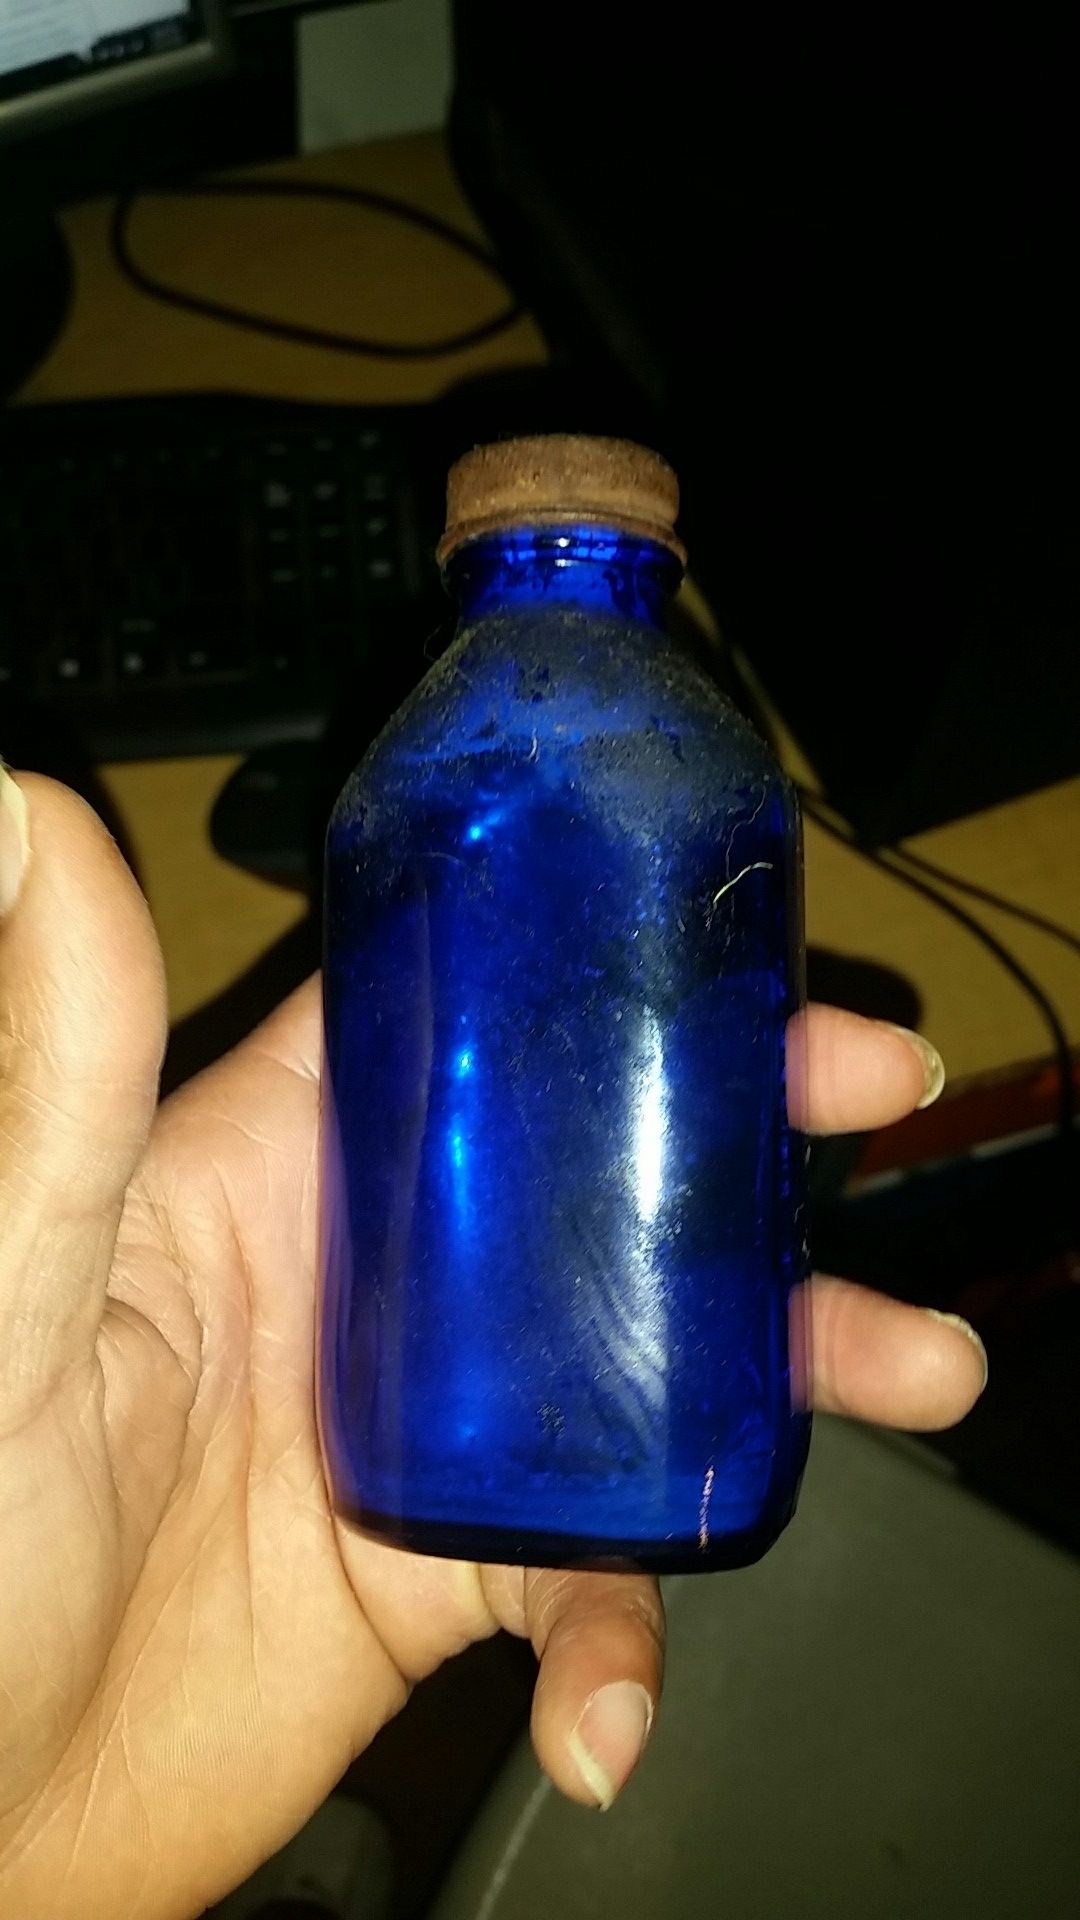 Antique poison bottle